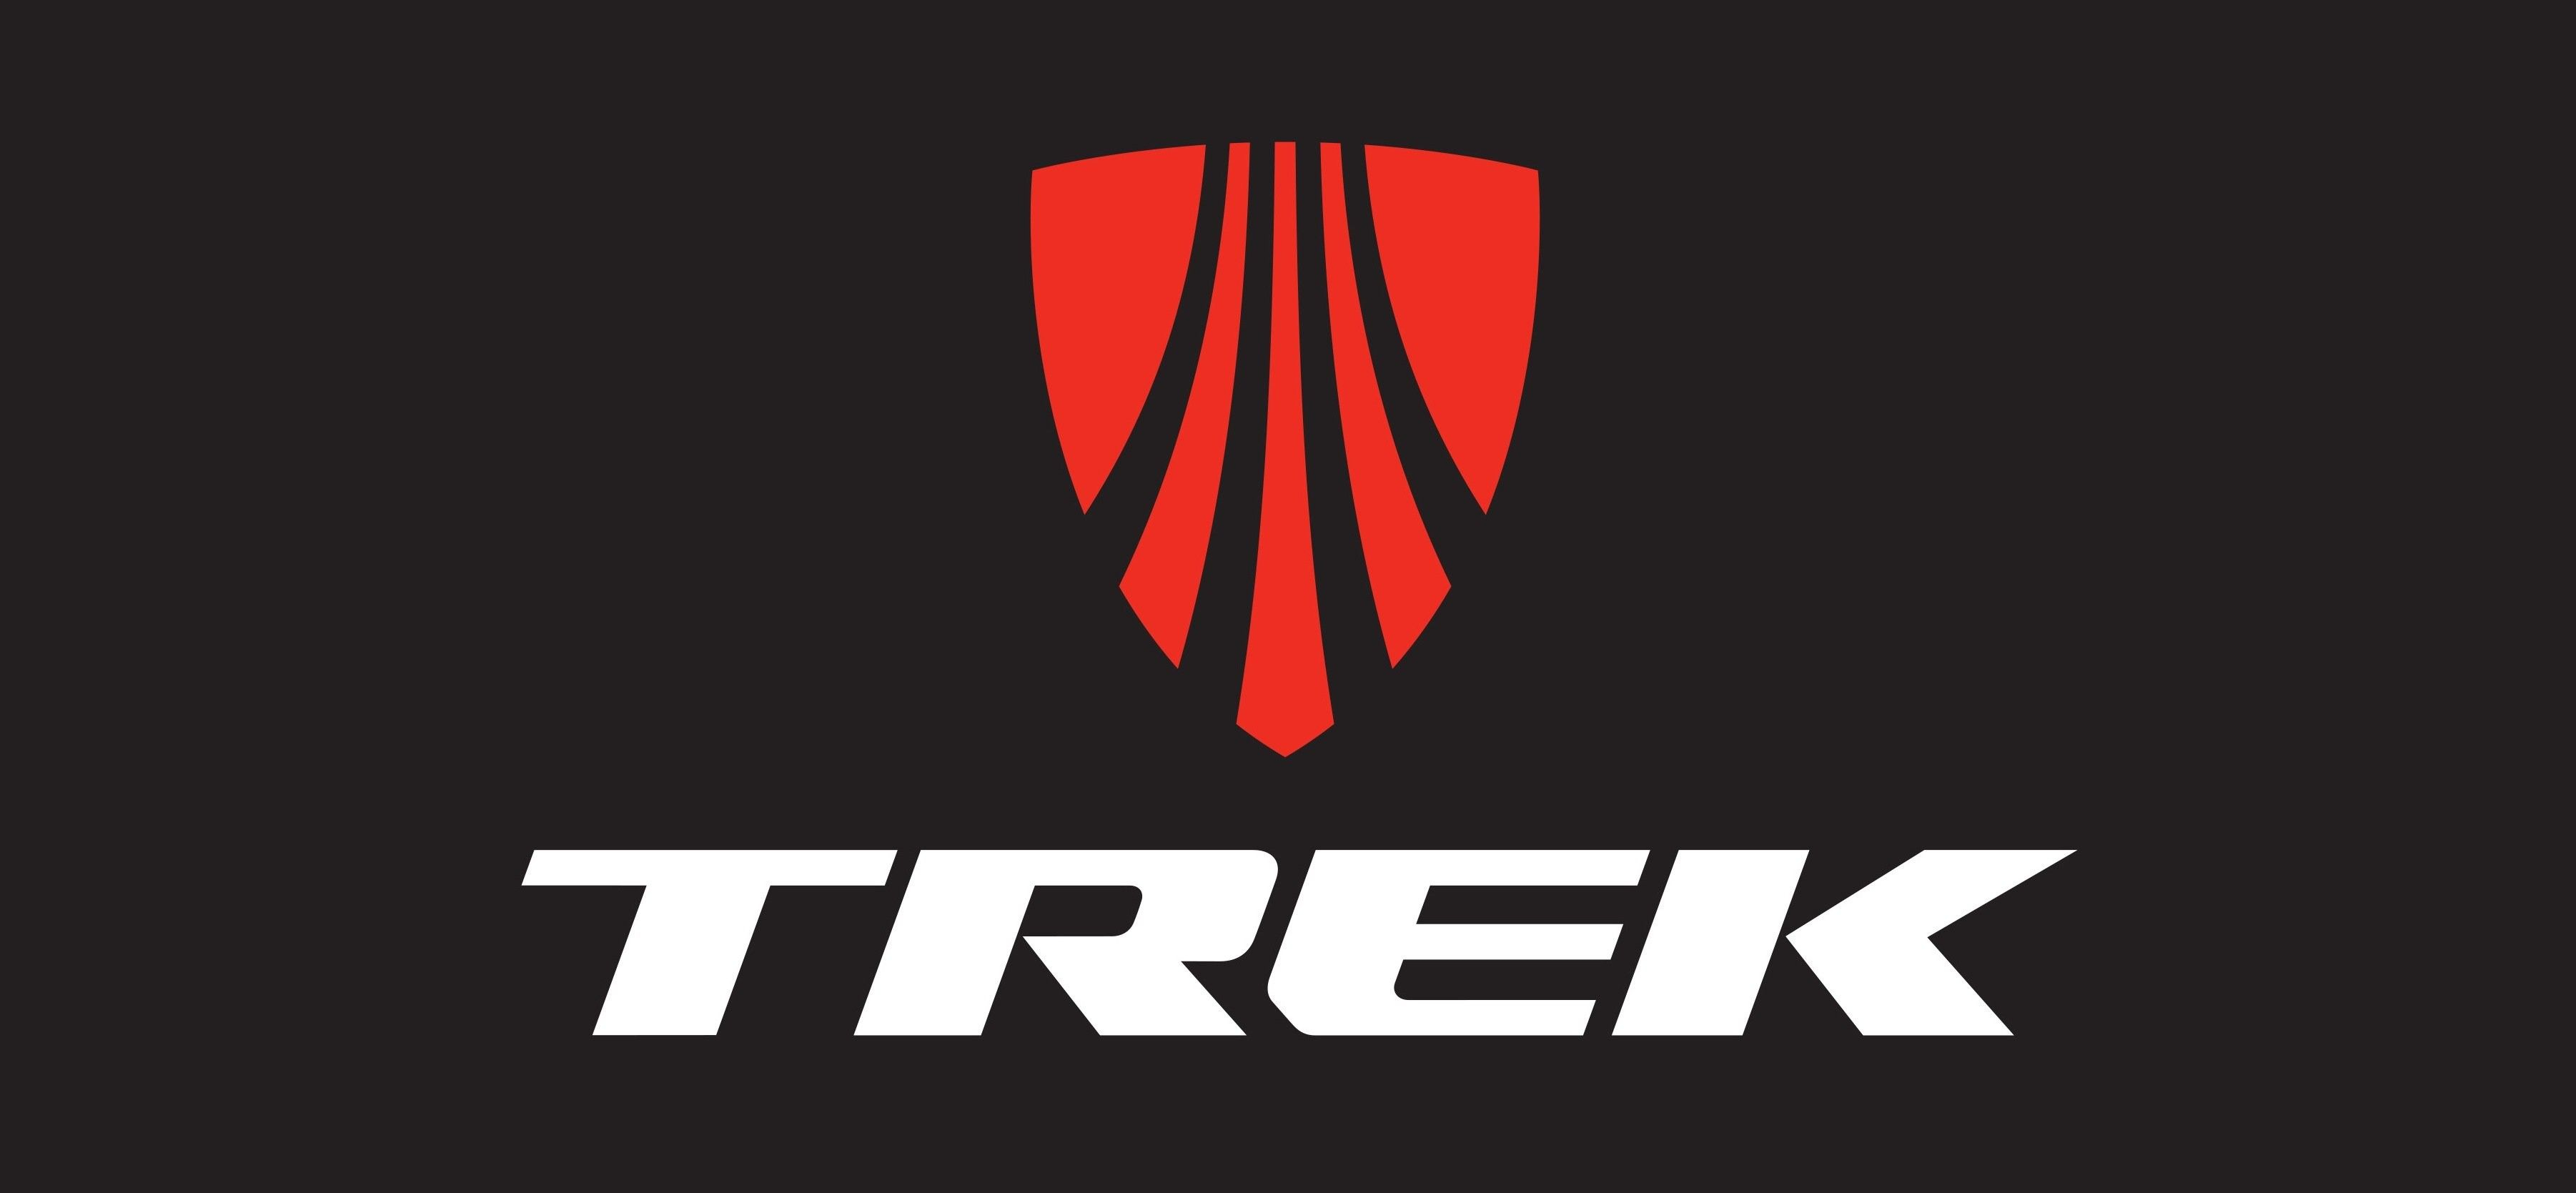 3604x1669 Trek Bikes Wallpaper (57+ images) | Trek bikes, Bike logo, Trek